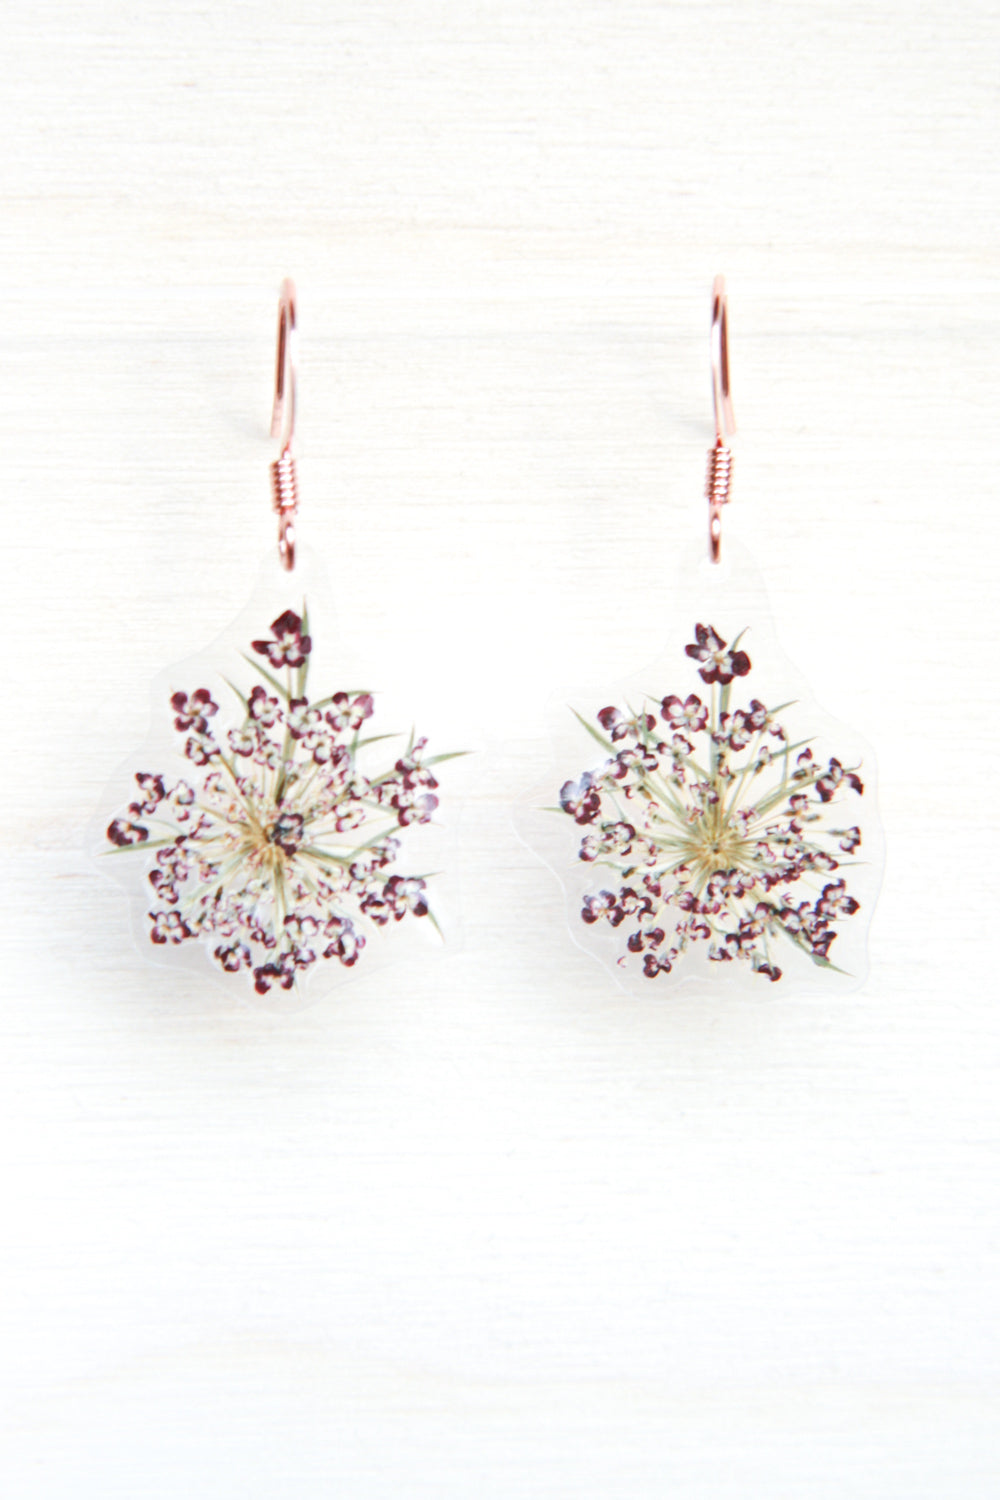 Purple Queen Anne’s Lace Pressed Flower Drop Earrings